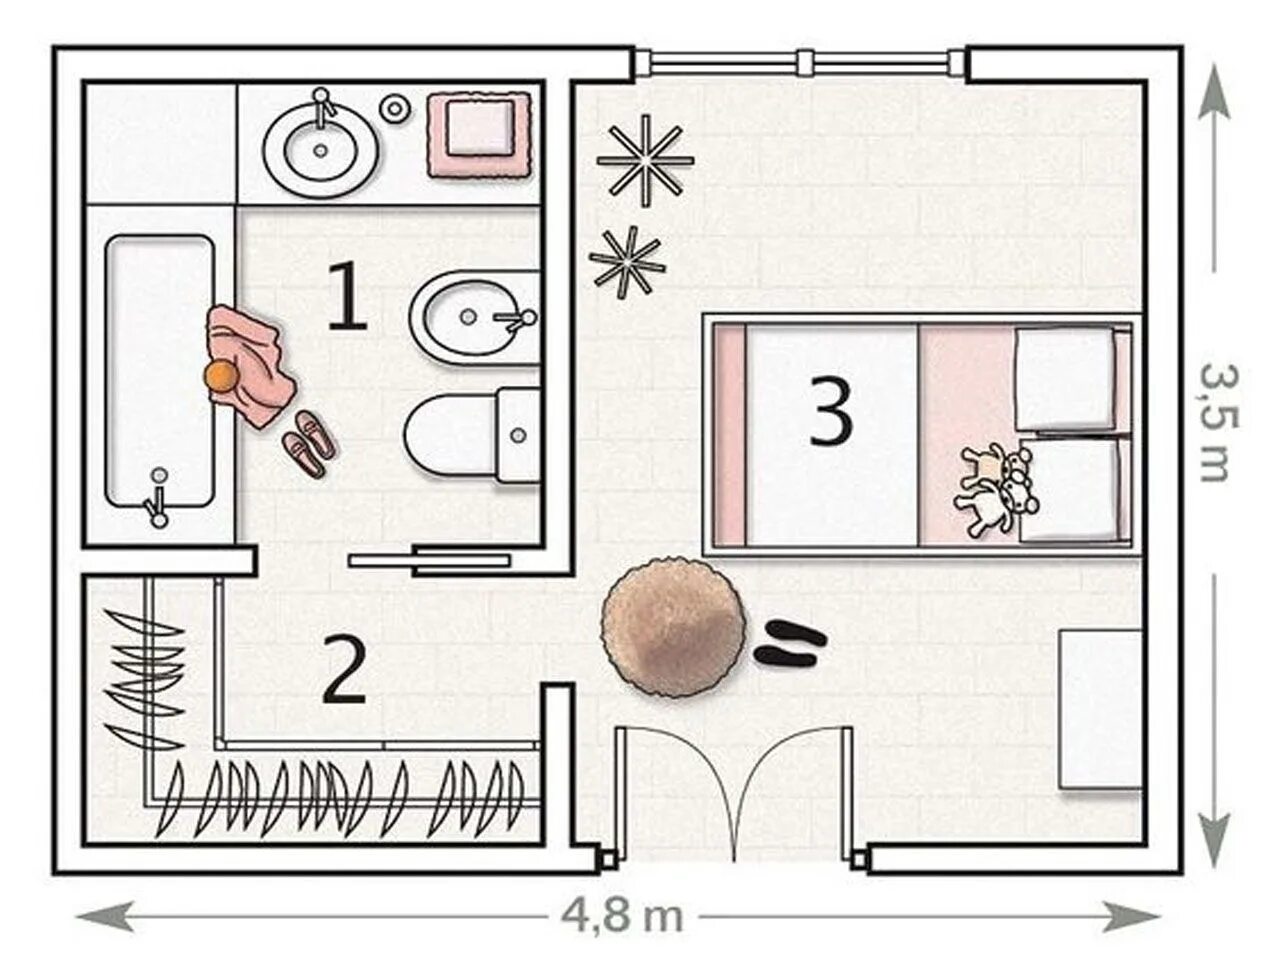 Сверху девять. Планировка комнаты чертеж. Схематичный план комнаты. Планировка спальни с гардеробом и санузлом. Схема квартиры.